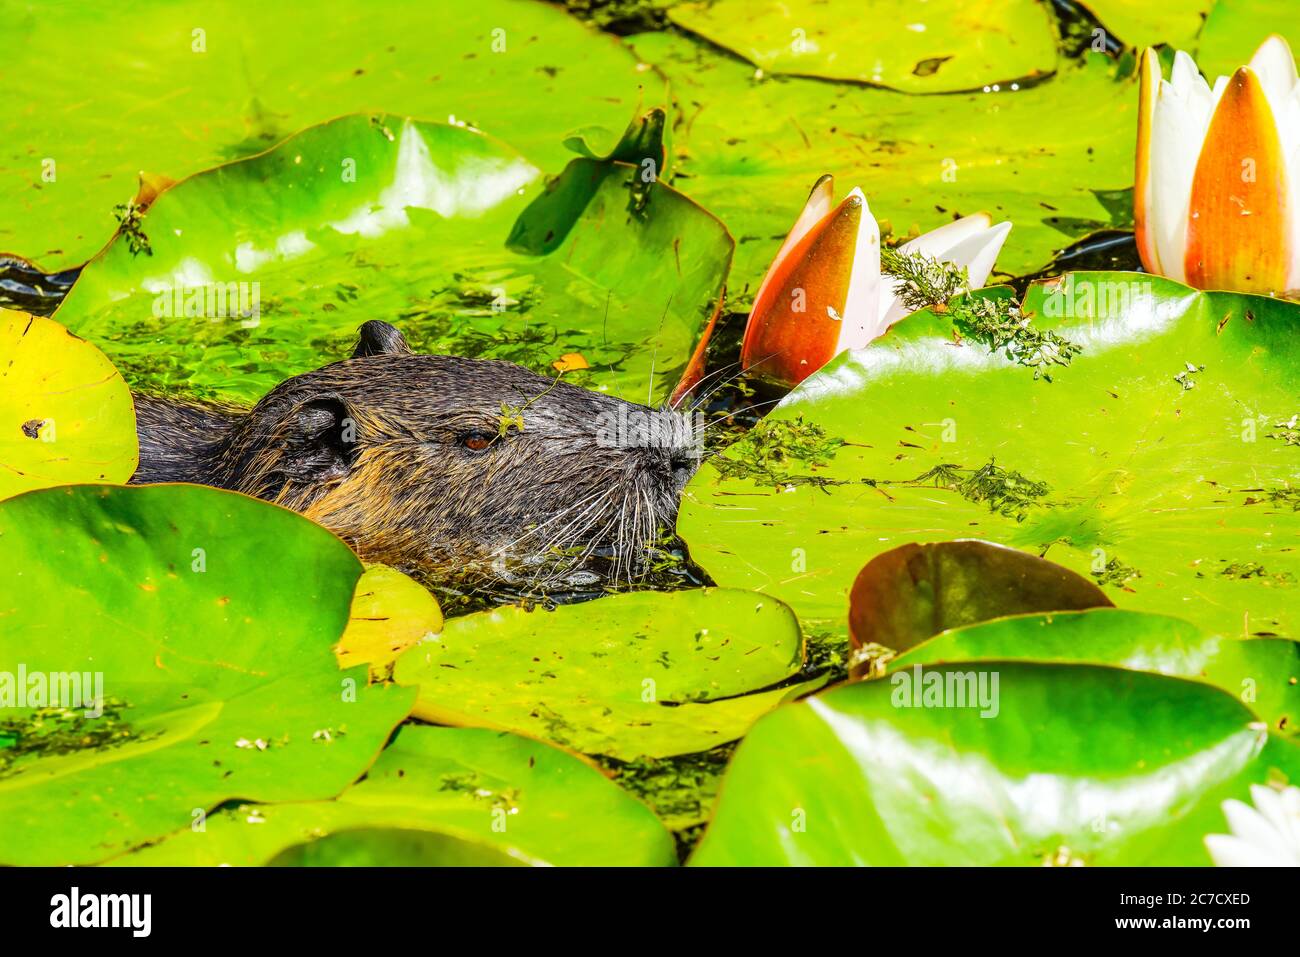 Ausgewachsener Coypu im Teich. Coypu ist ein großer, pflanzenfressender, semiaquatischer Nager. Mitglied der Familie Myocastoridae, die zu den Echimyidae gehört Stockfoto